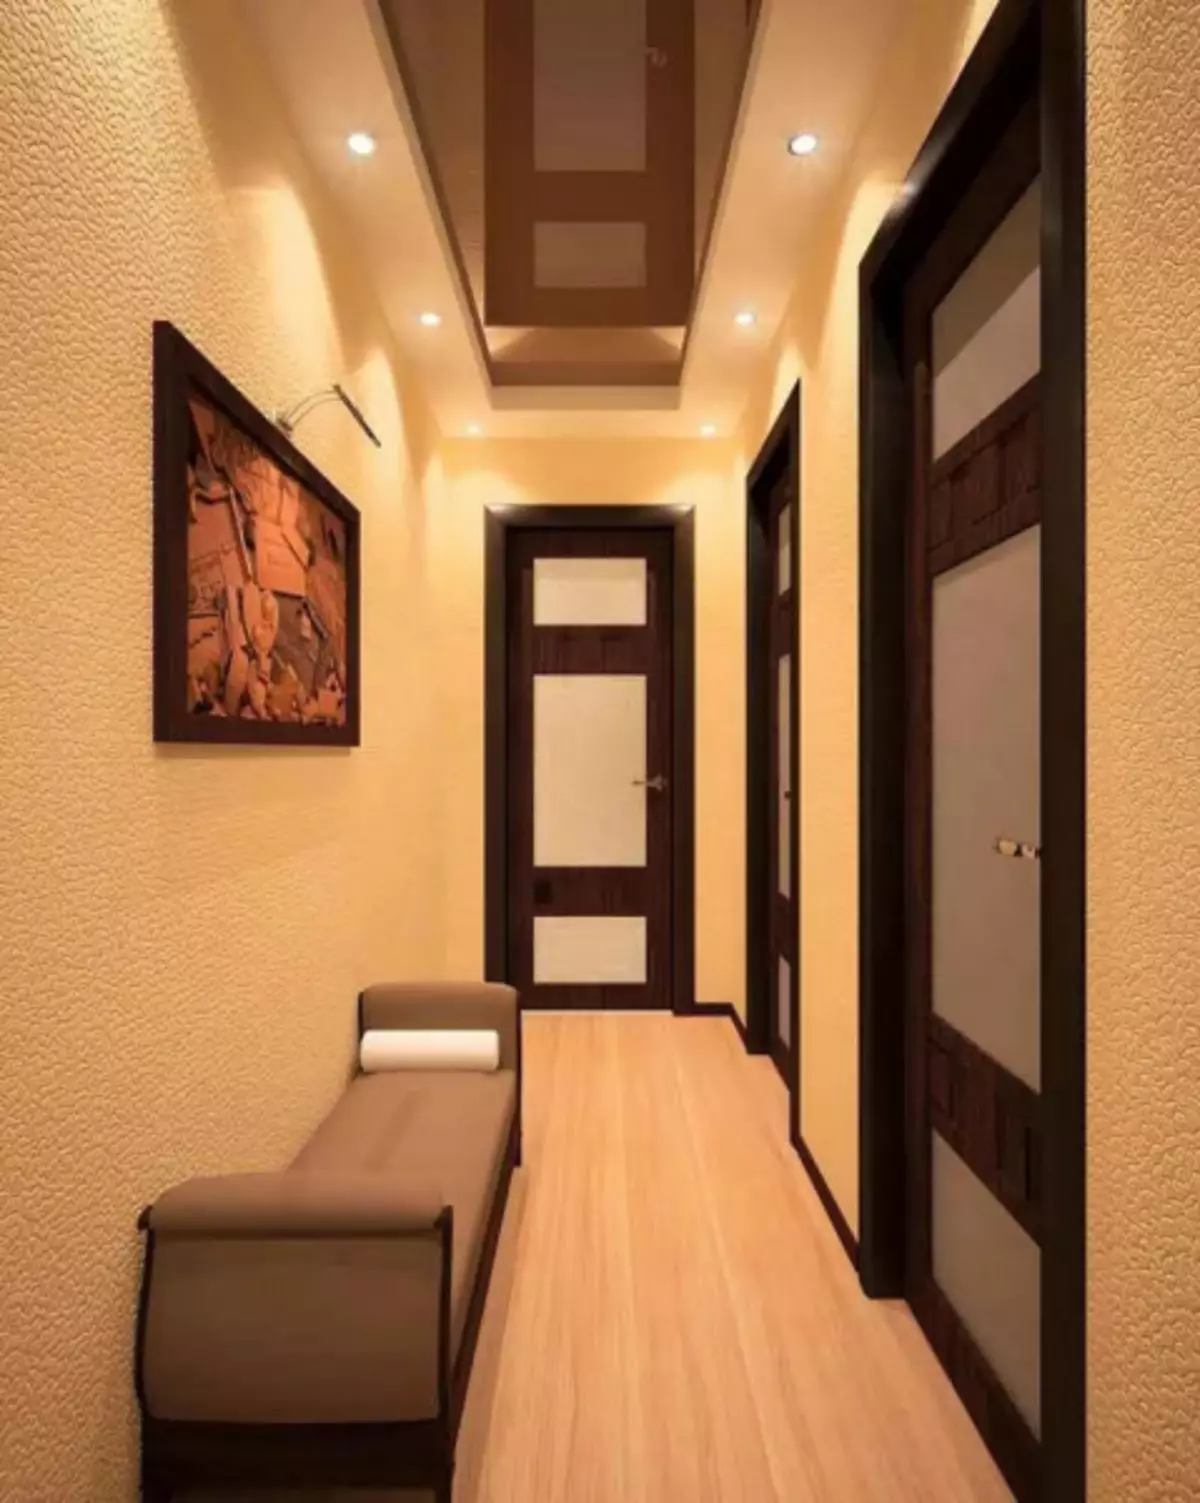 Thiết kế hành lang nhỏ - Bí mật tạo nội thất sành điệu (35 ảnh)